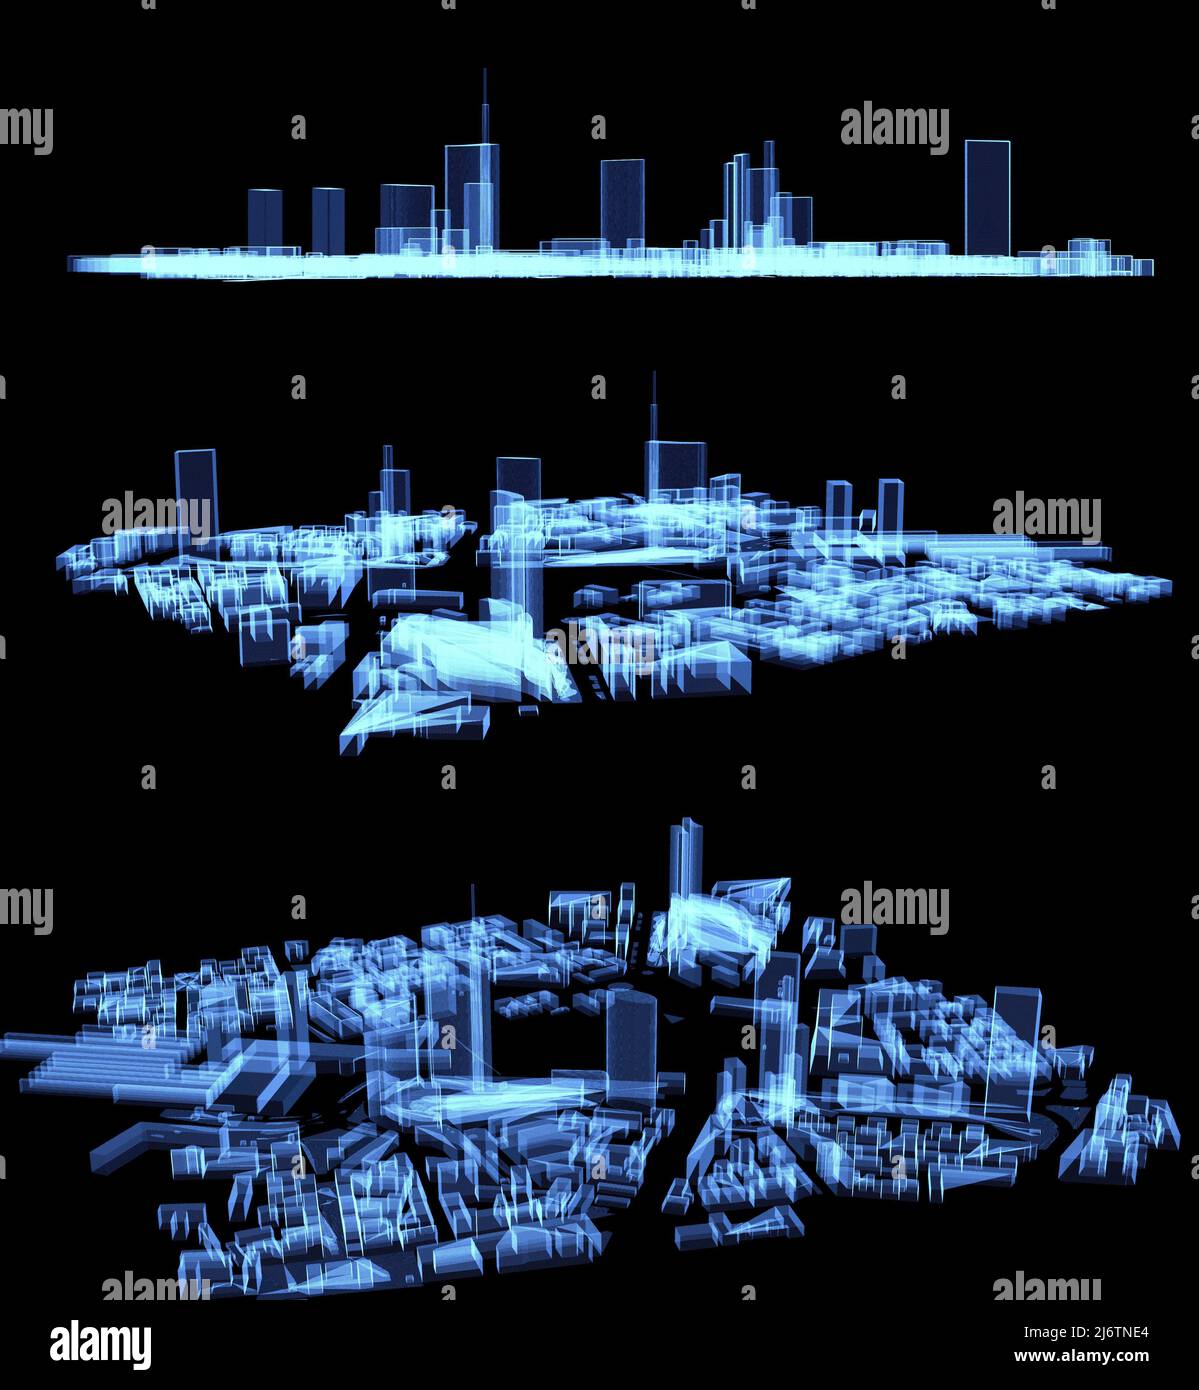 Carte de la région de Porta Nuova à Milan, hologramme, science-fiction, horizon, gratte-ciel et palais de la région. Vue aérienne des bâtiments et des maisons. Italie Banque D'Images